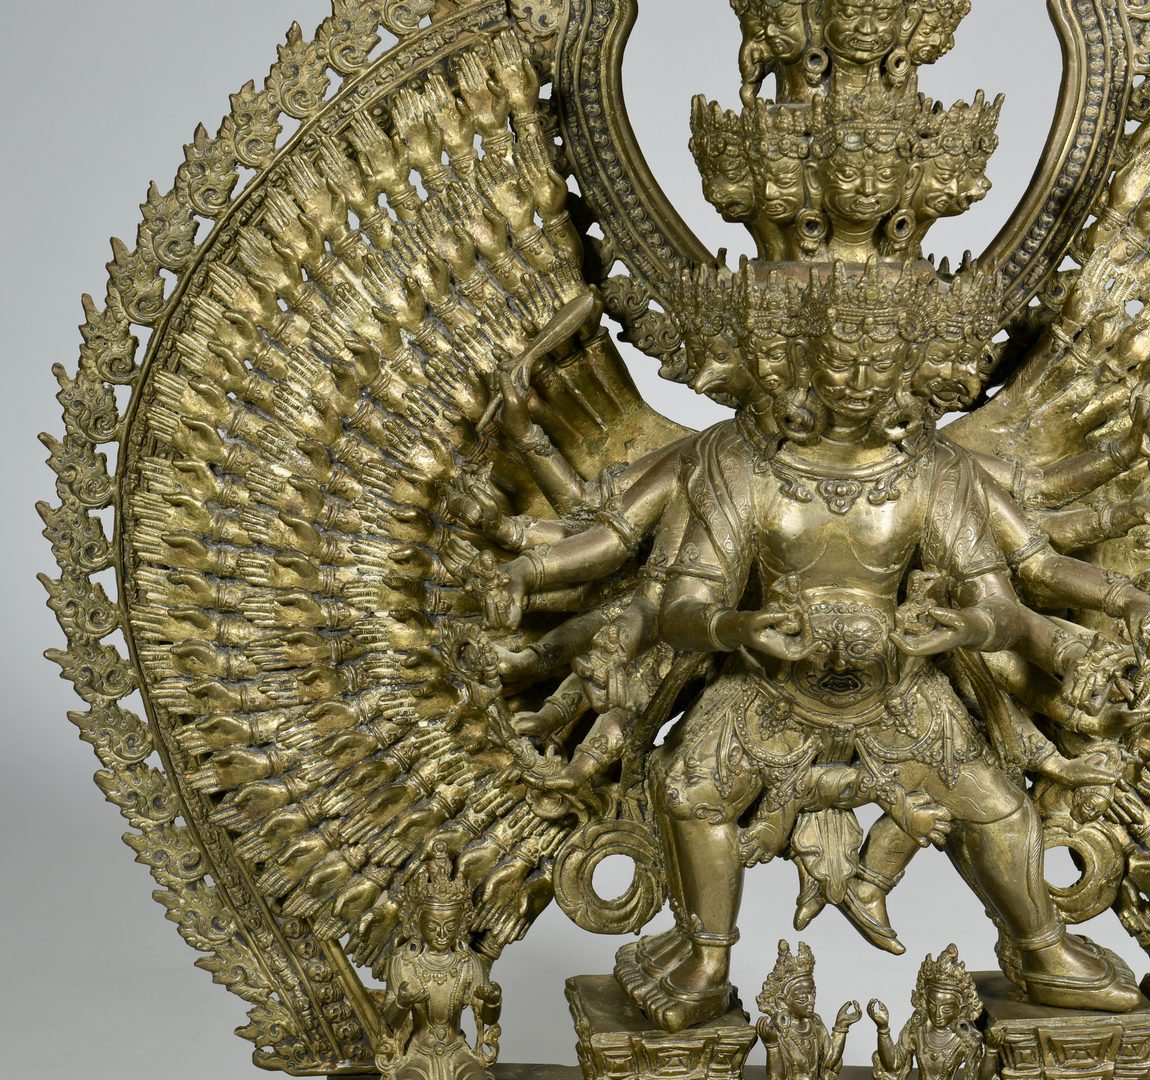 Lot 13: Bronze 43" Tibetan Avalokitesvara Sculpture